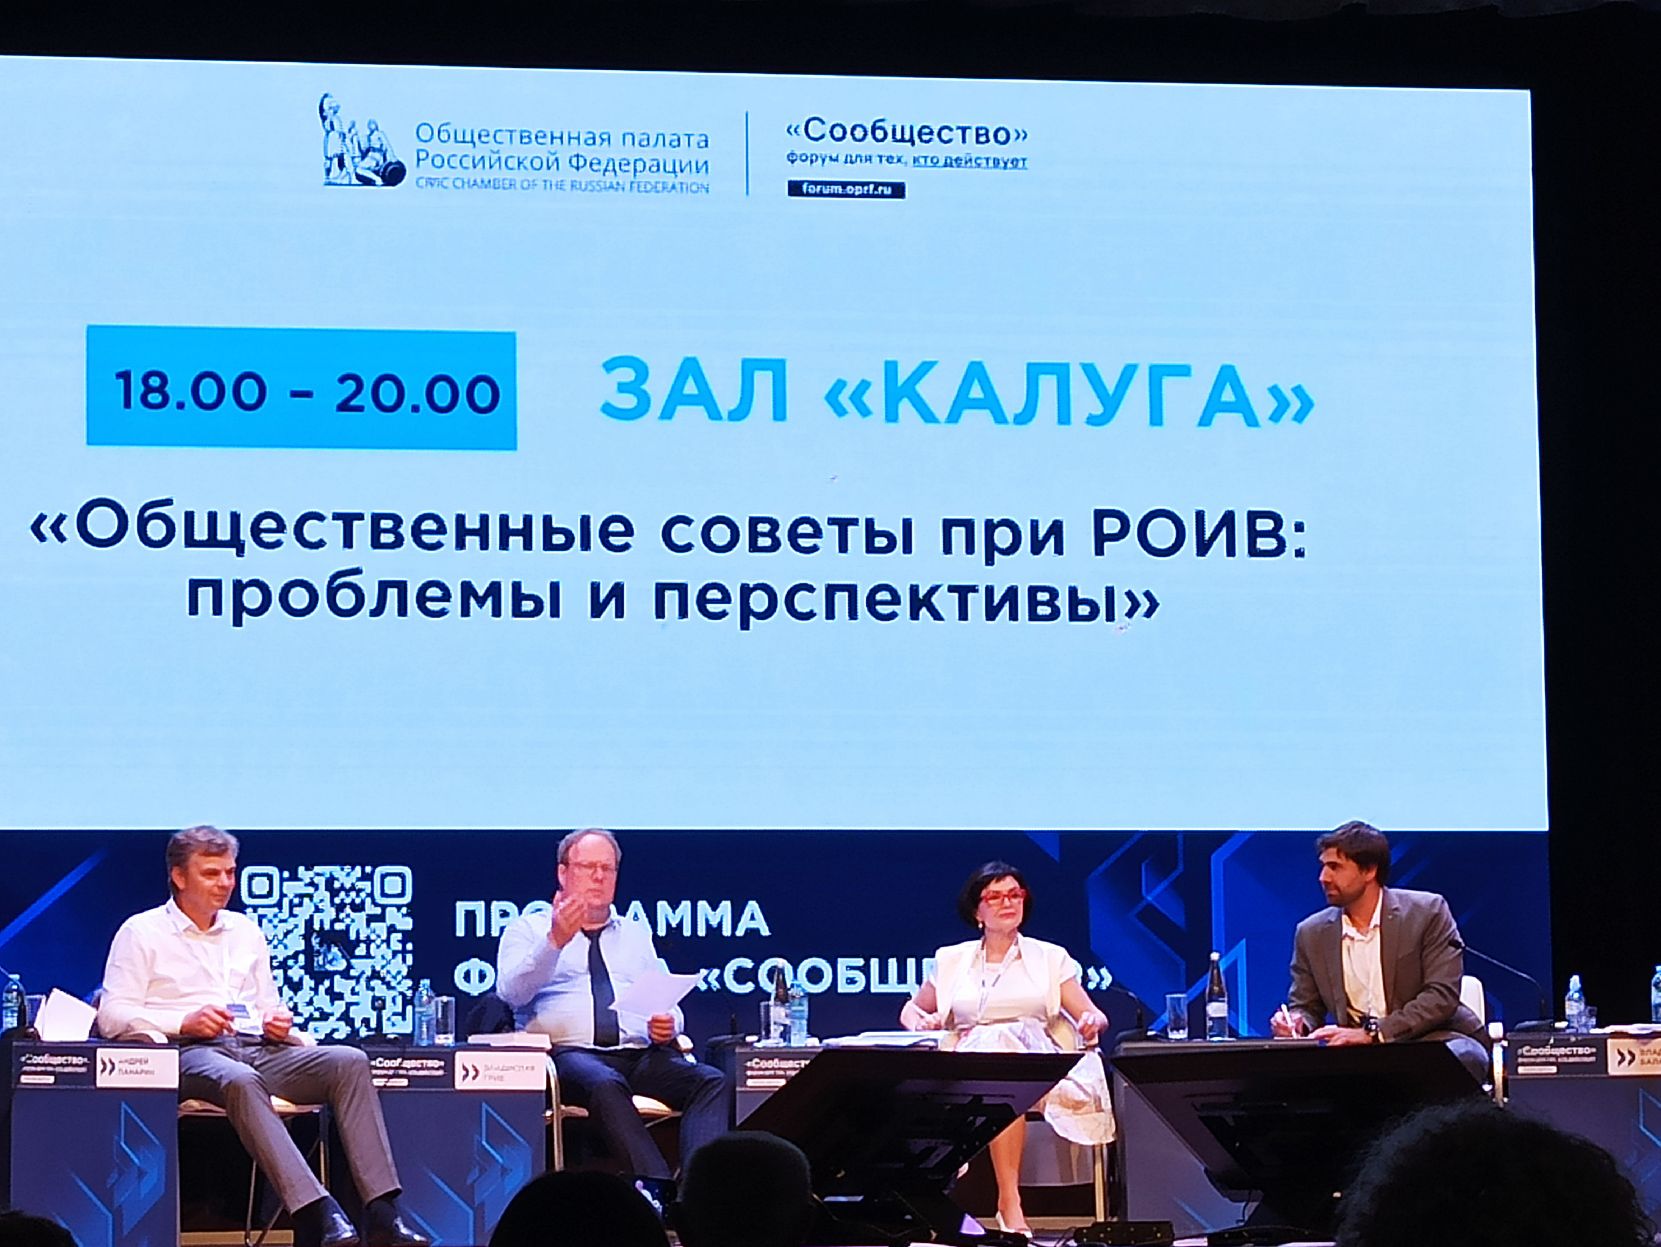 Калужский Росреестр принял участие в форуме Общественной палаты Российской Федерации «Сообщество».